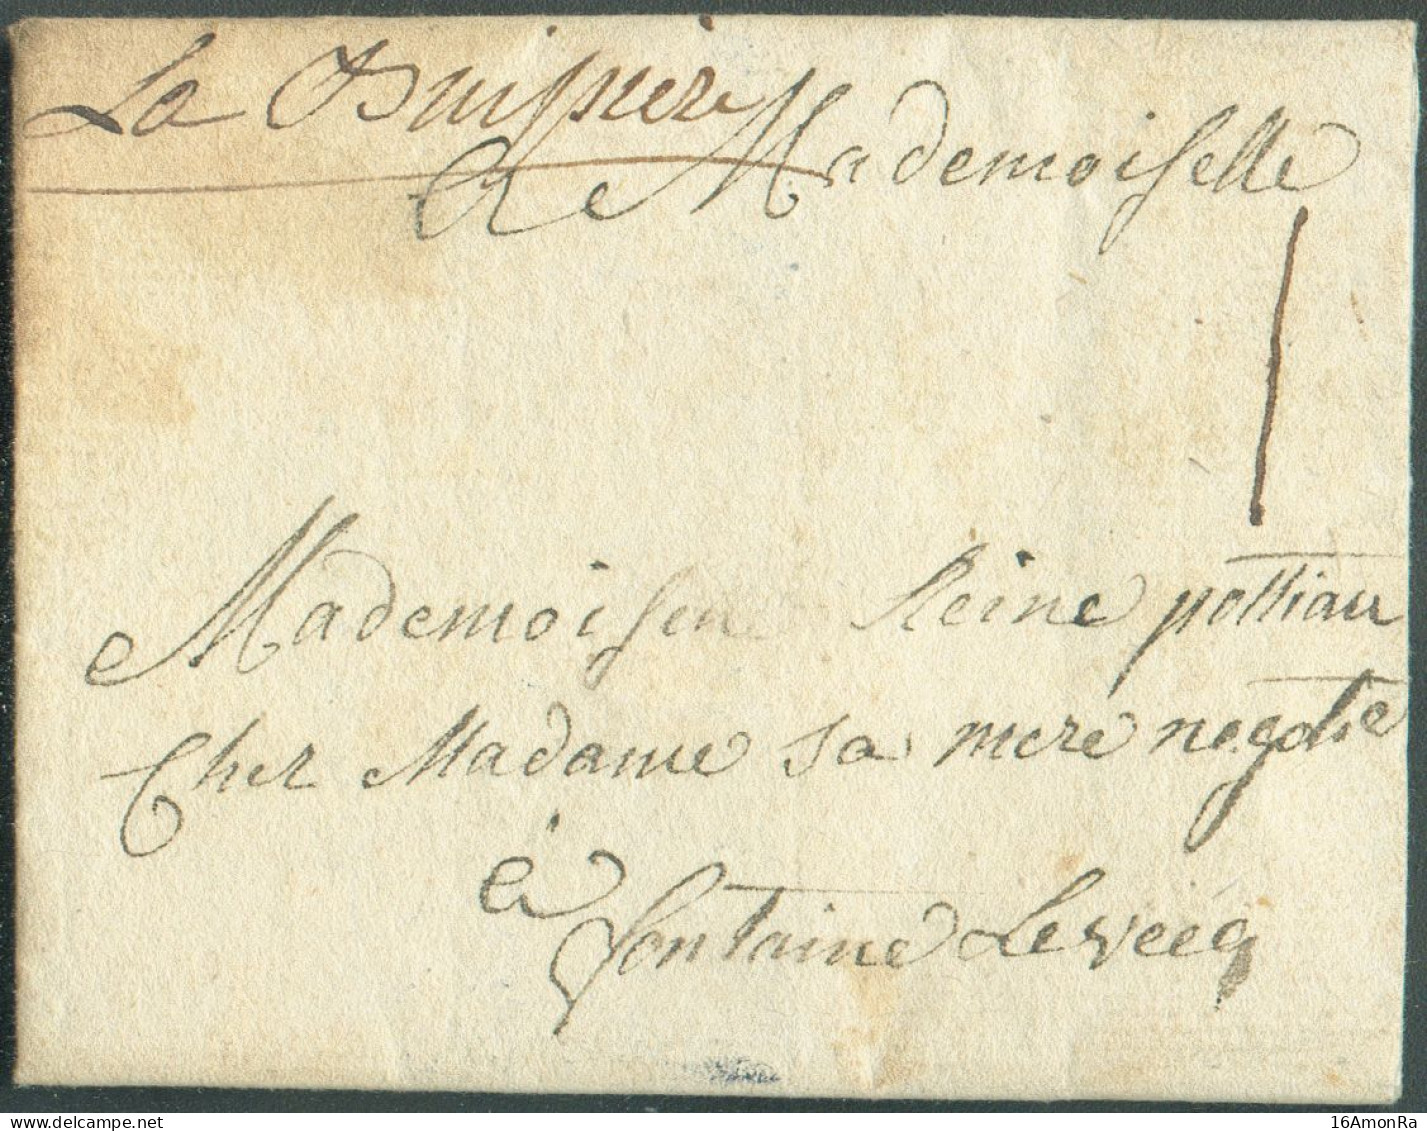 LAC De RANCE Le 8 Septembre 1773, Via (griffe Manuscrite) 'La Buissière' Vers Fontaine-l'Evêque; Port '1' Sol. - Superbe - 1714-1794 (Pays-Bas Autrichiens)